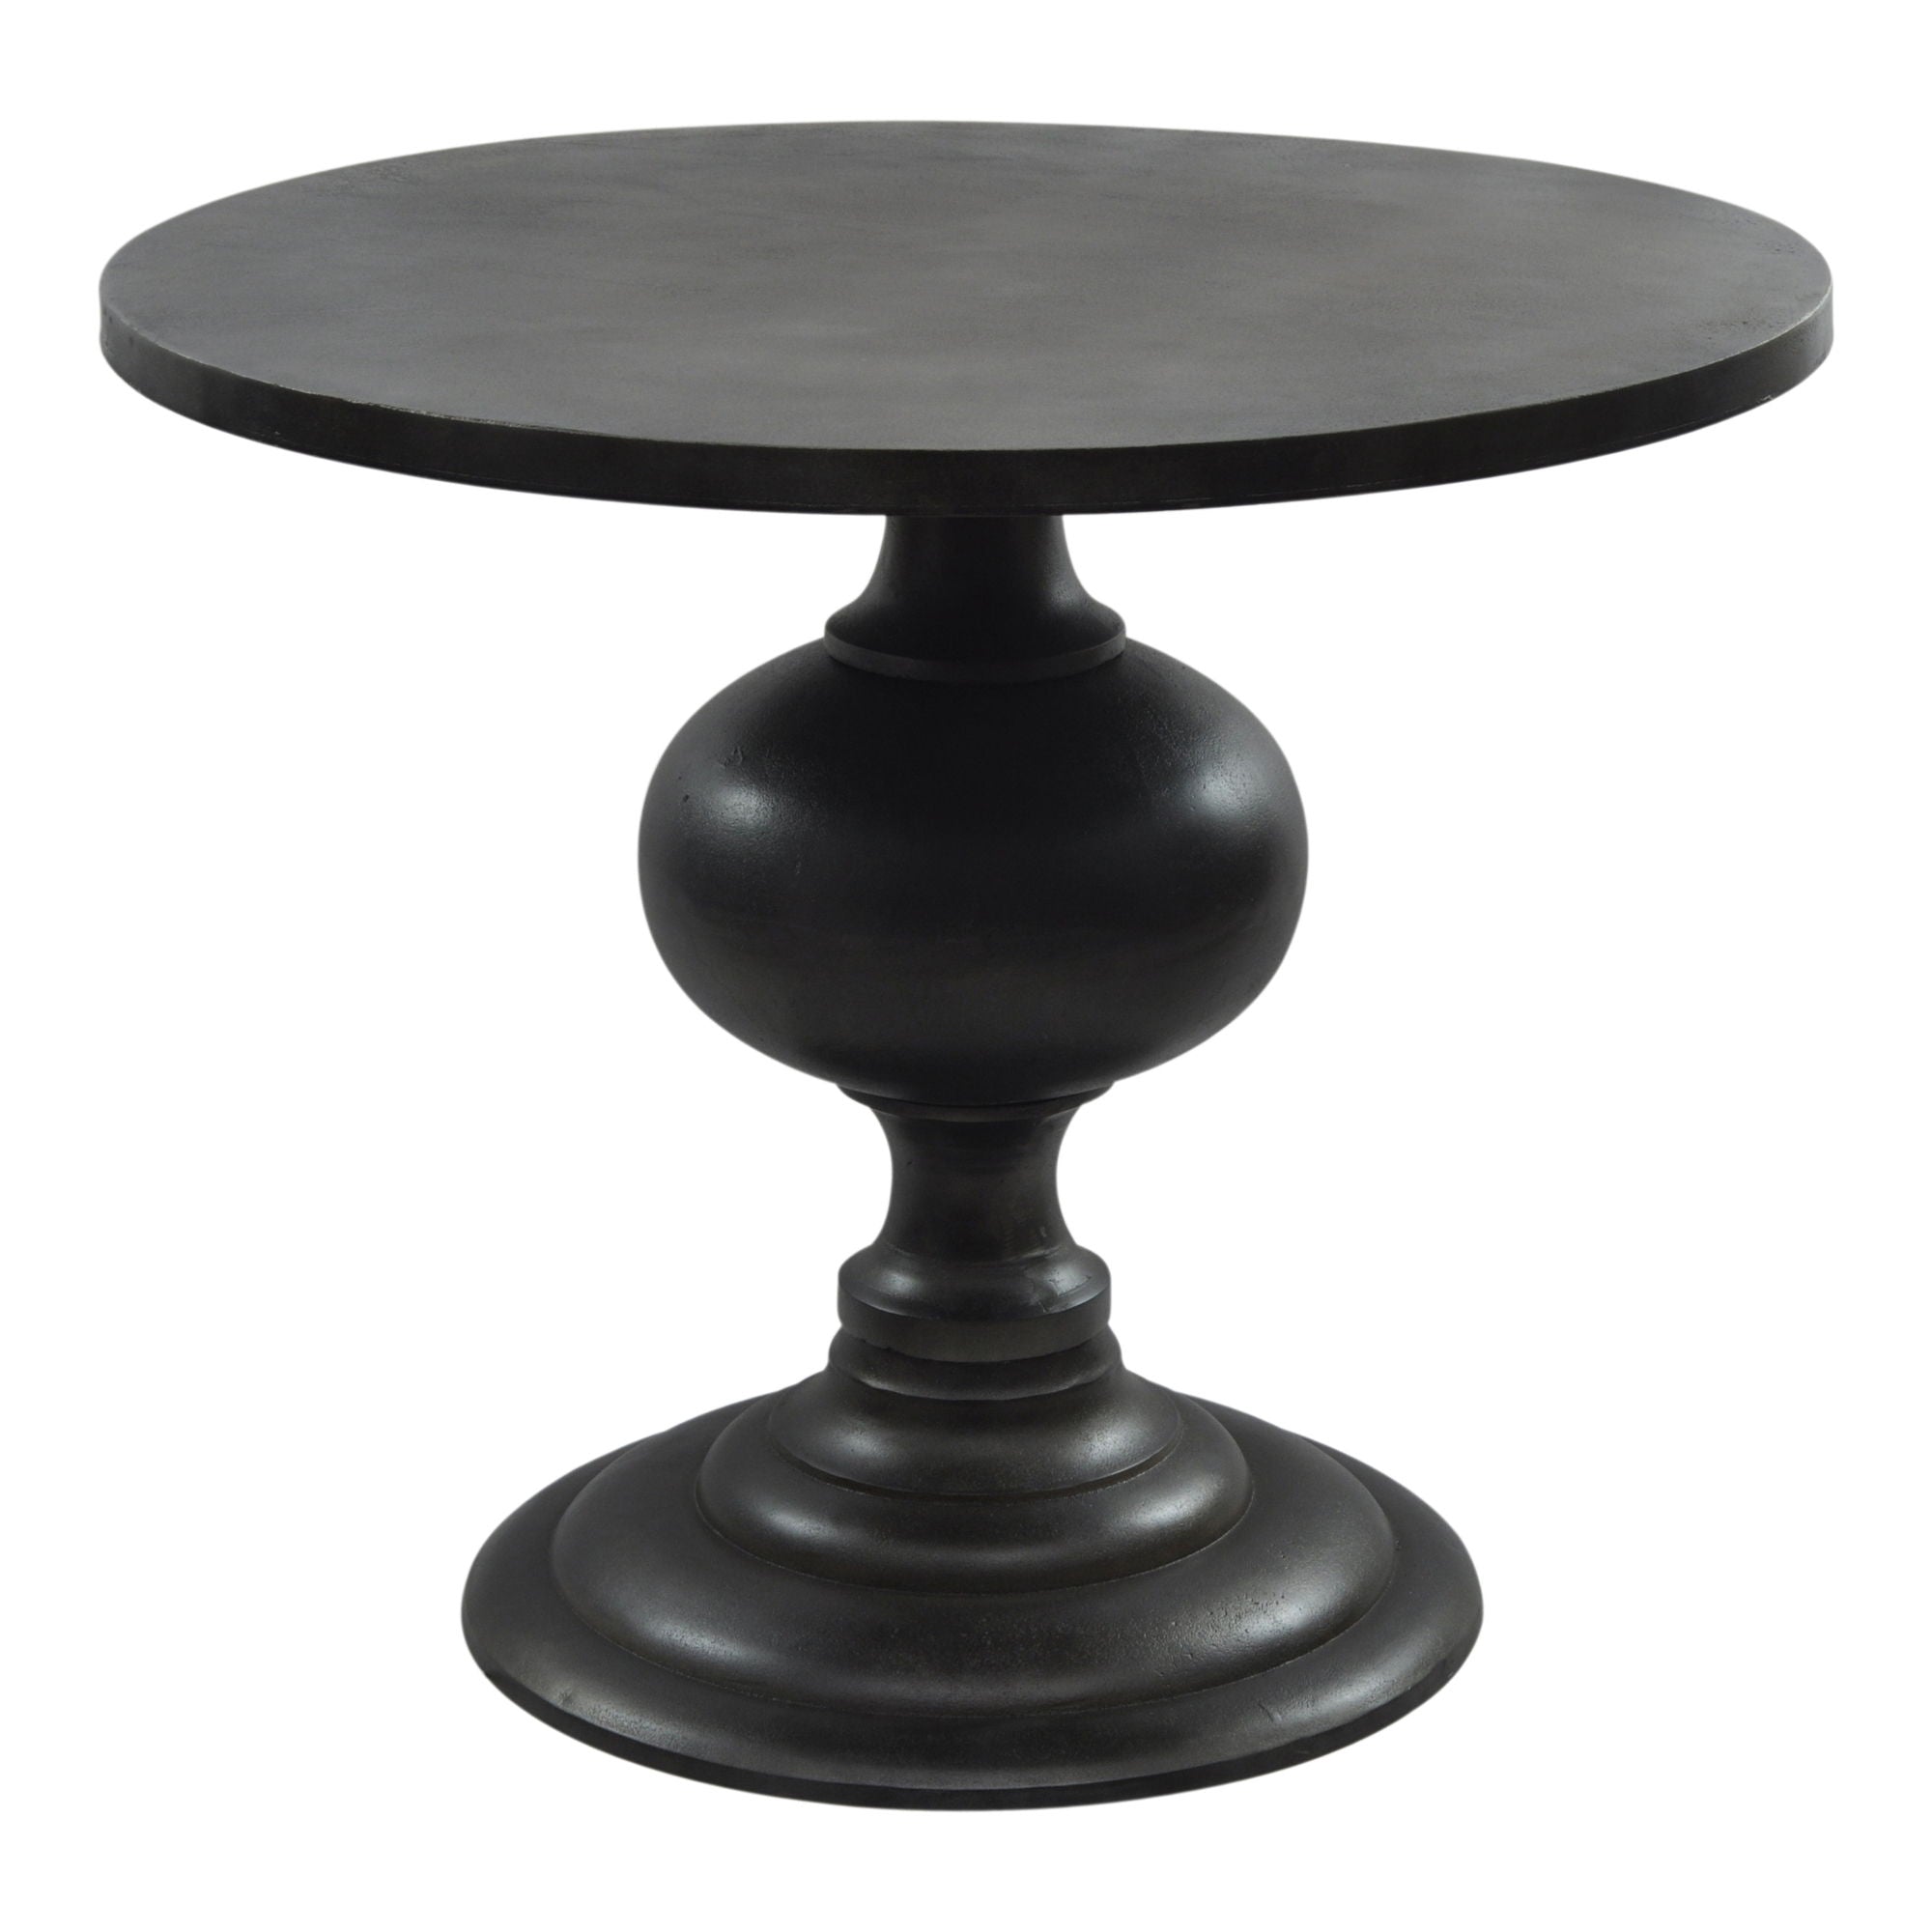 Lexie - Dining Table - Black - Aluminum